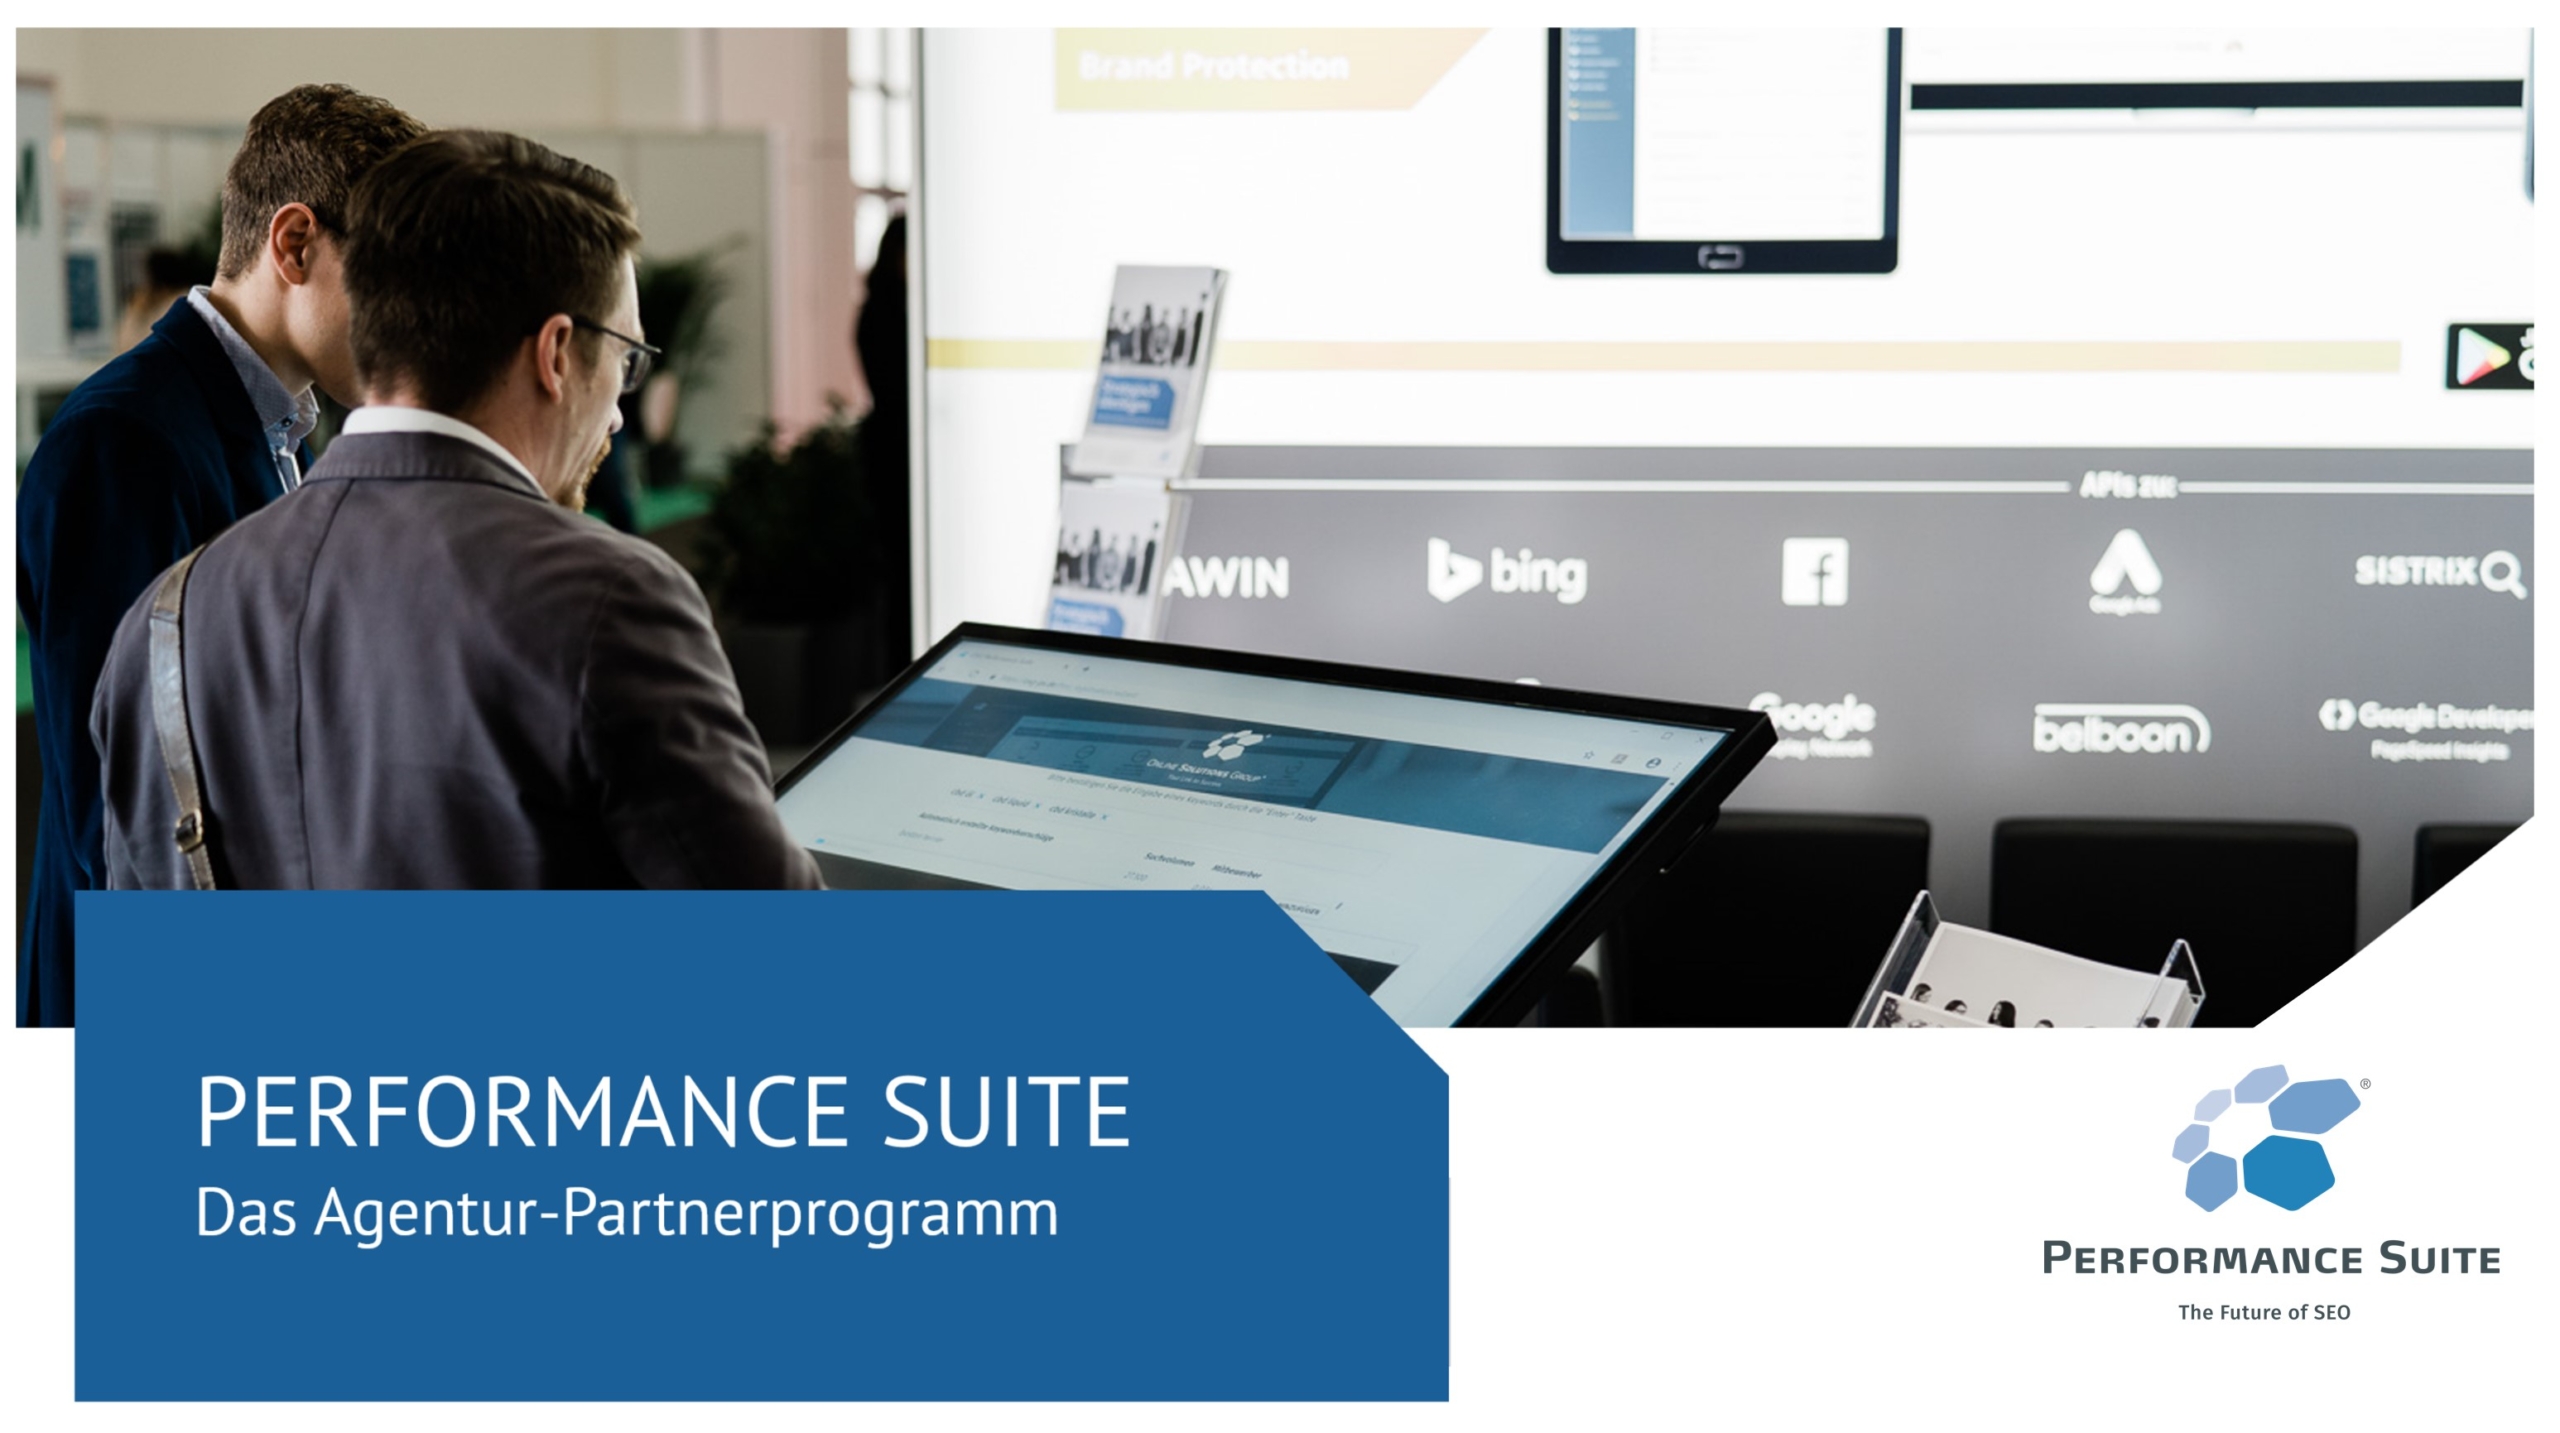 performance-suite-power-brand-agentur-partnerprogramm